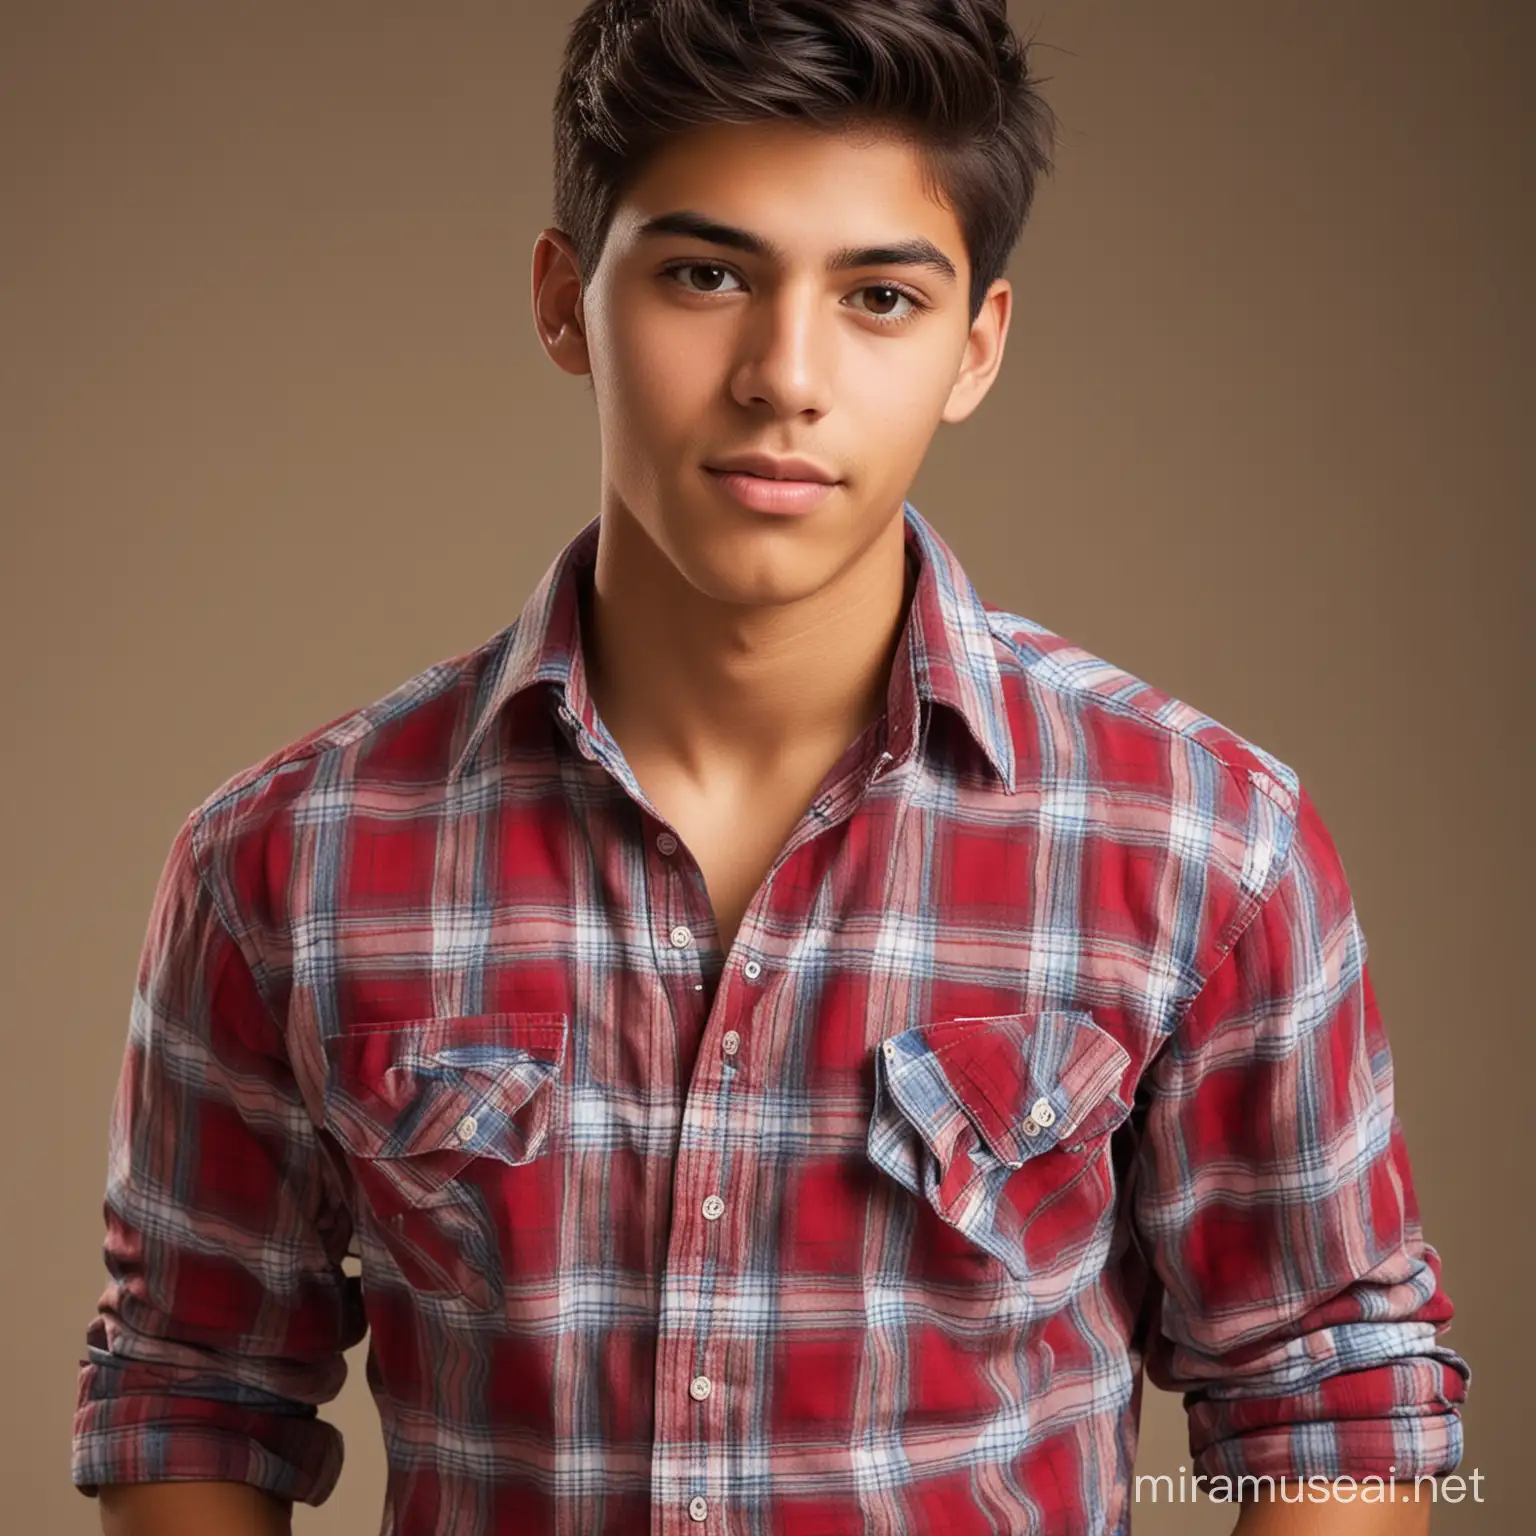 sexy 18 year old hispanic male wearing a plaid shirt
